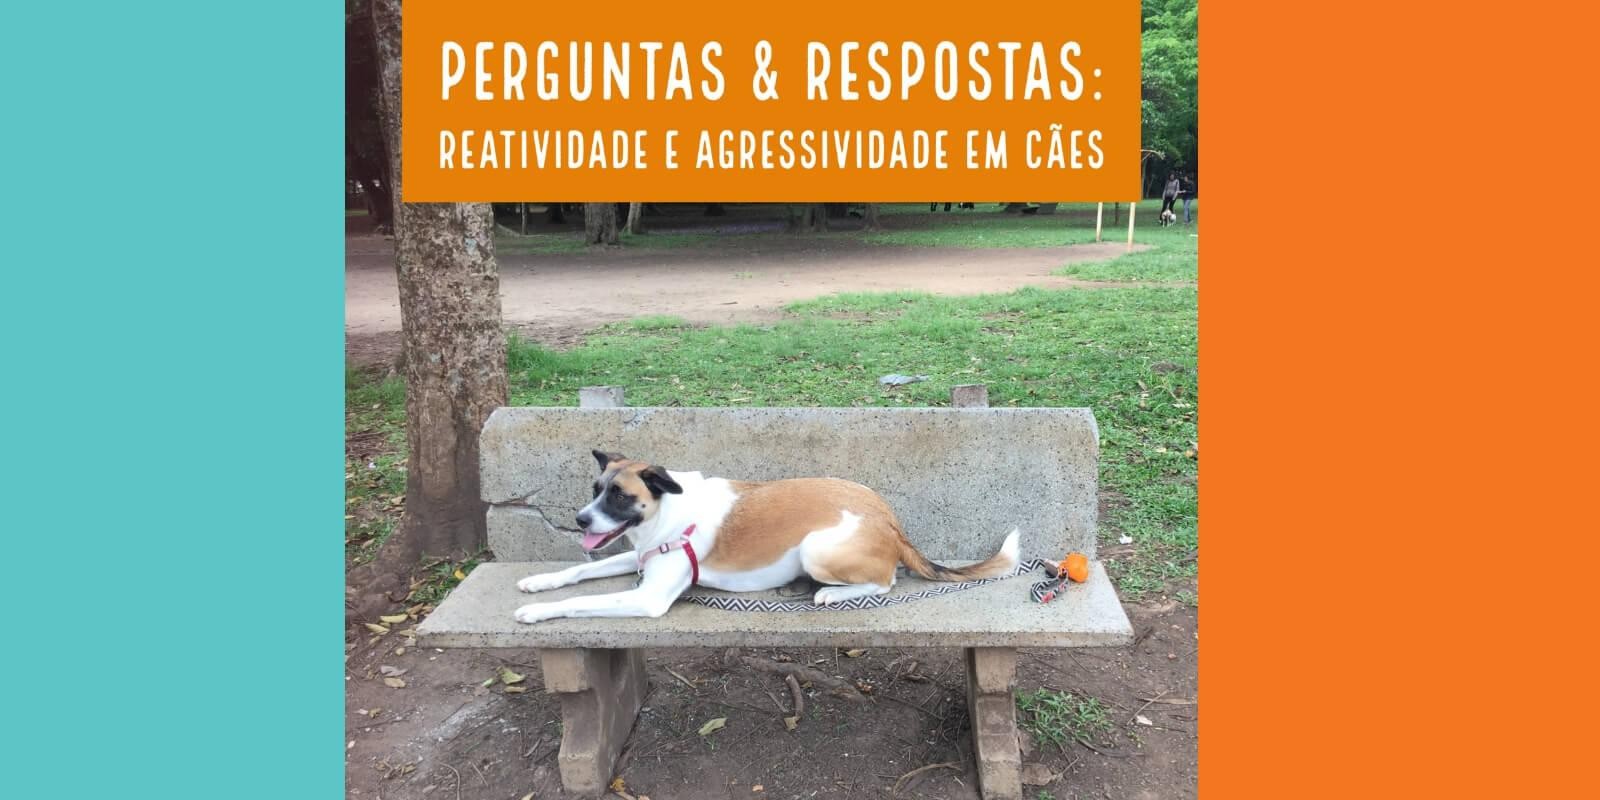 Lambeijos, Carla Ruas - Casos Reais: Reatividade e Agressividade em Cães